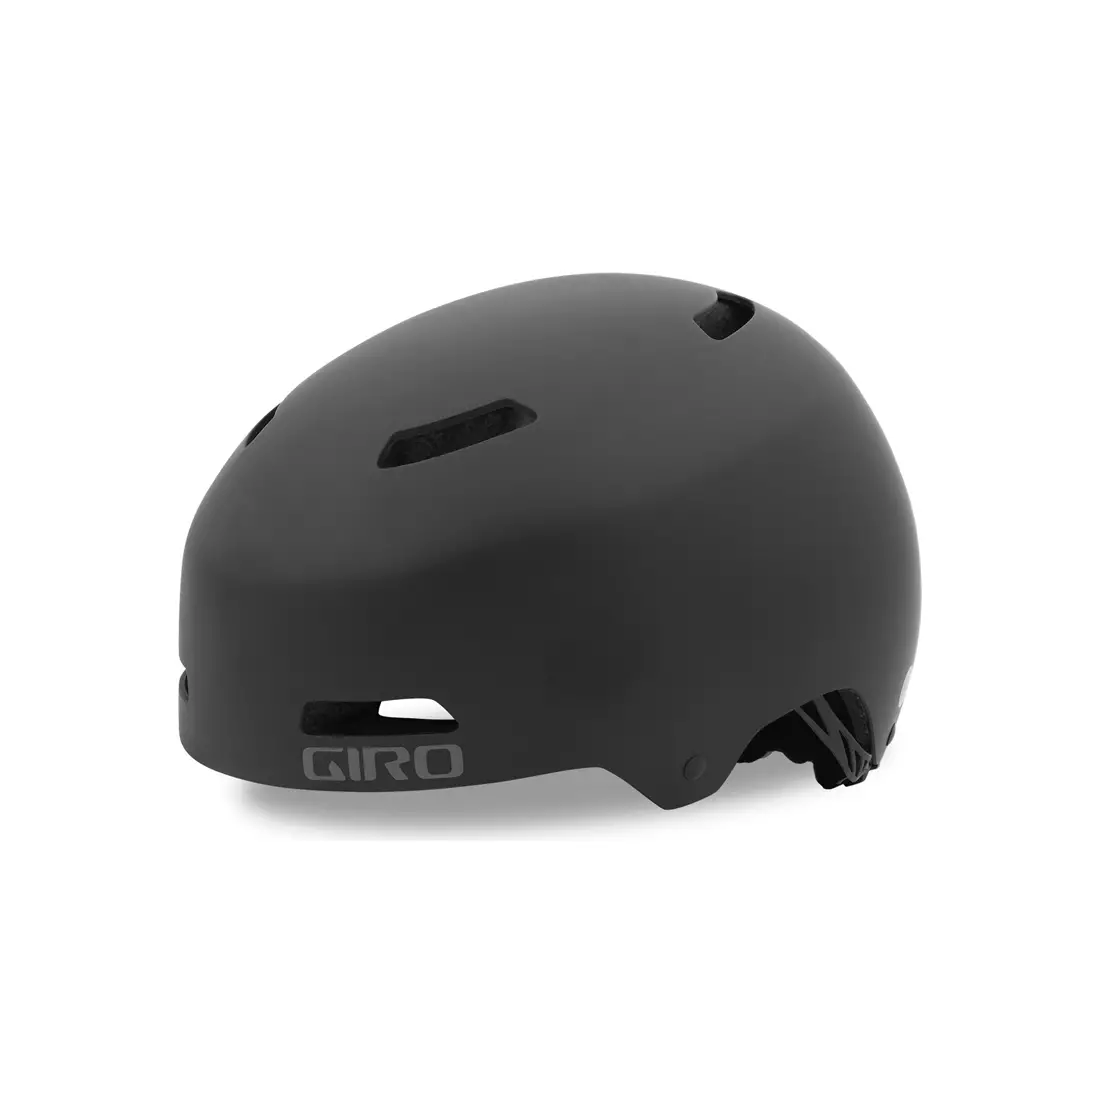 GIRO bmx helmet GIRO QUARTER FS matte black GR-7075326